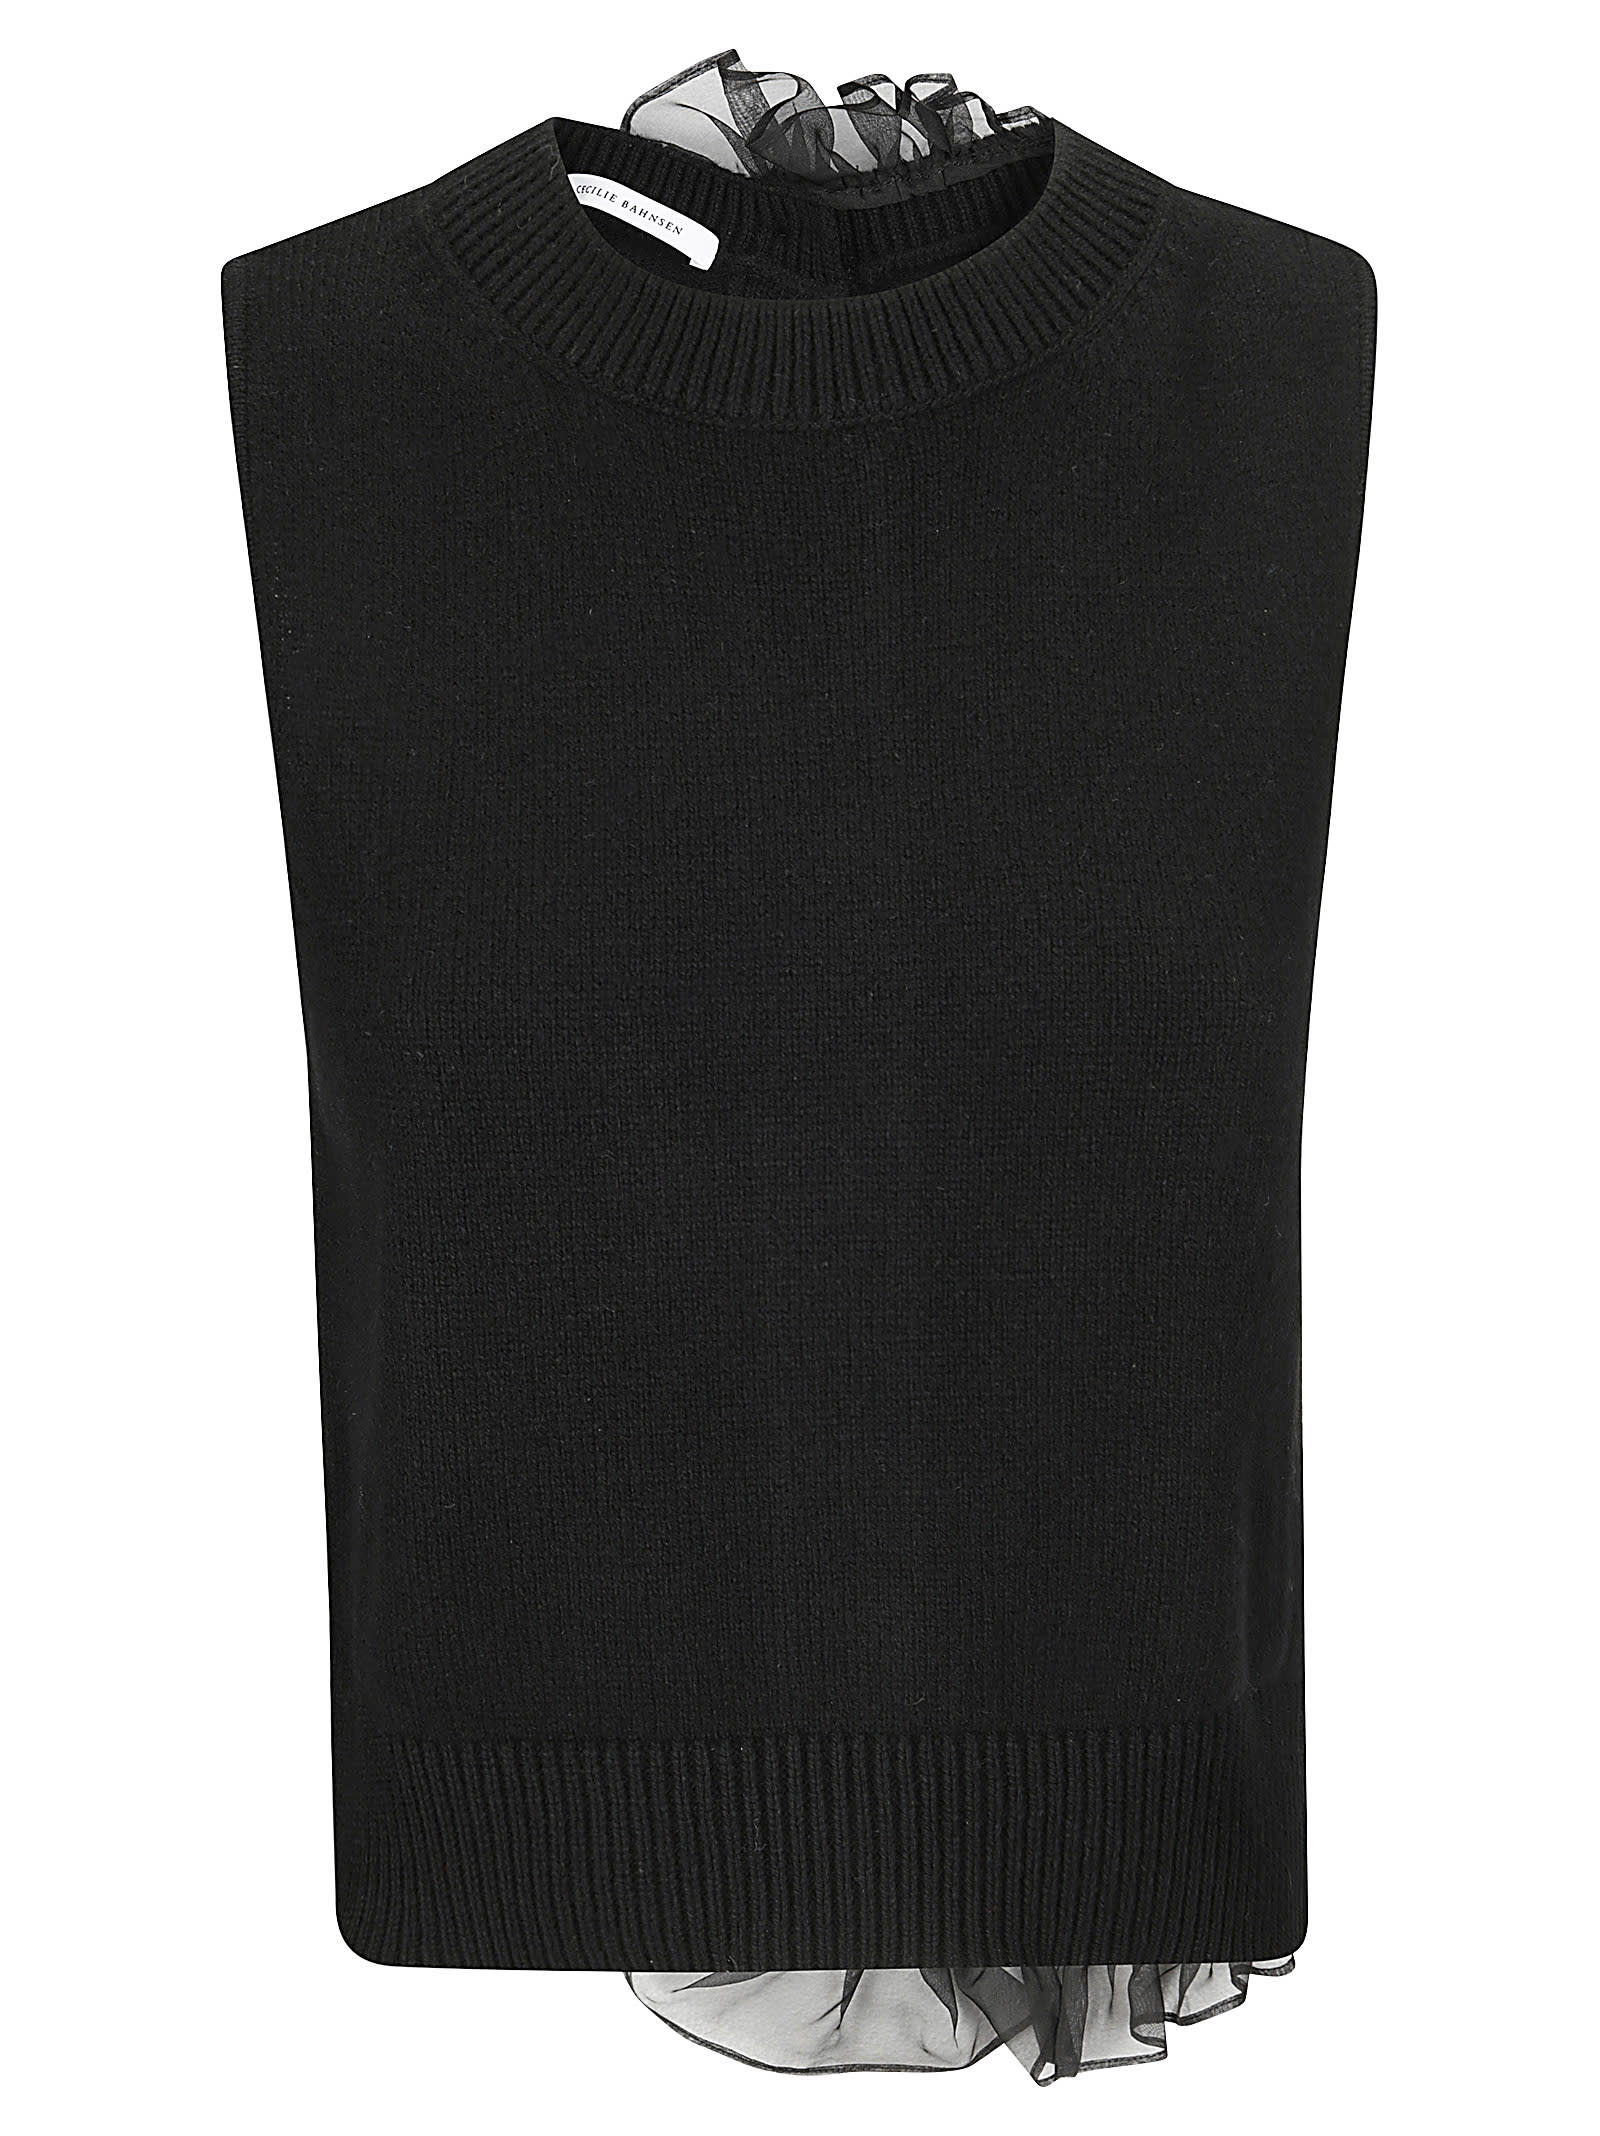 Olivier Vest Recycled Cashmere Black